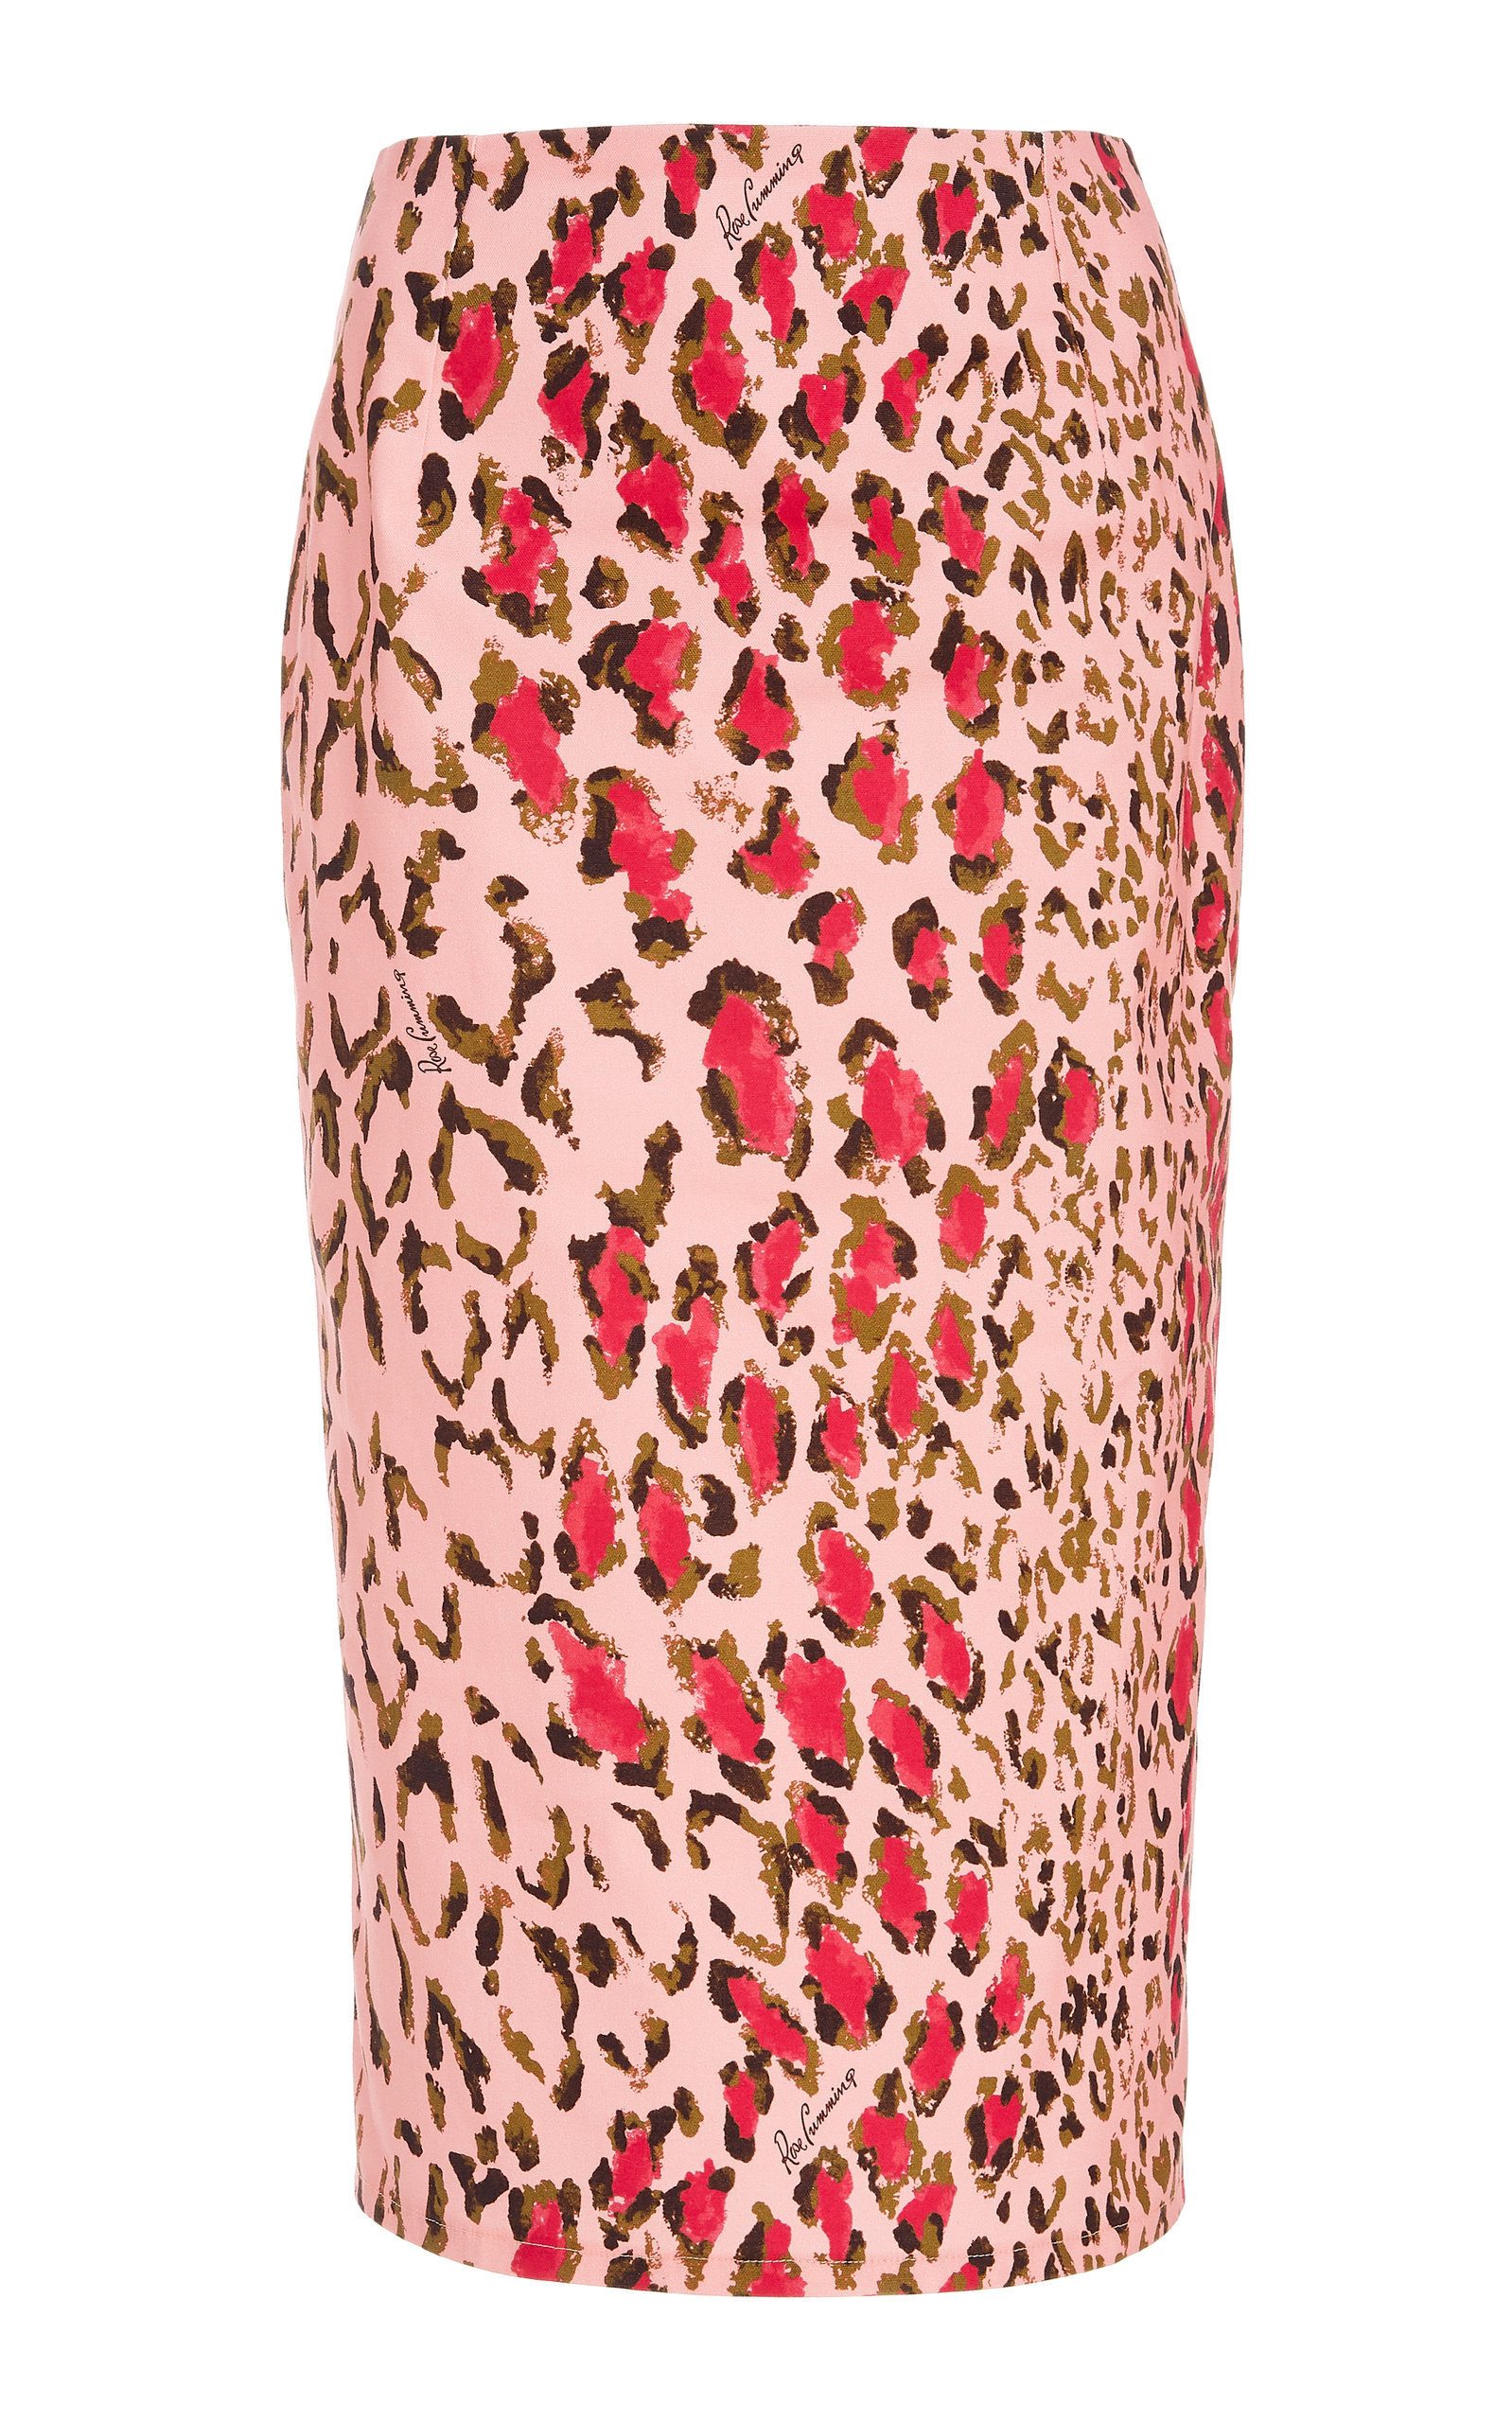 Leopard Print Cotton Pencil Skirt, $890